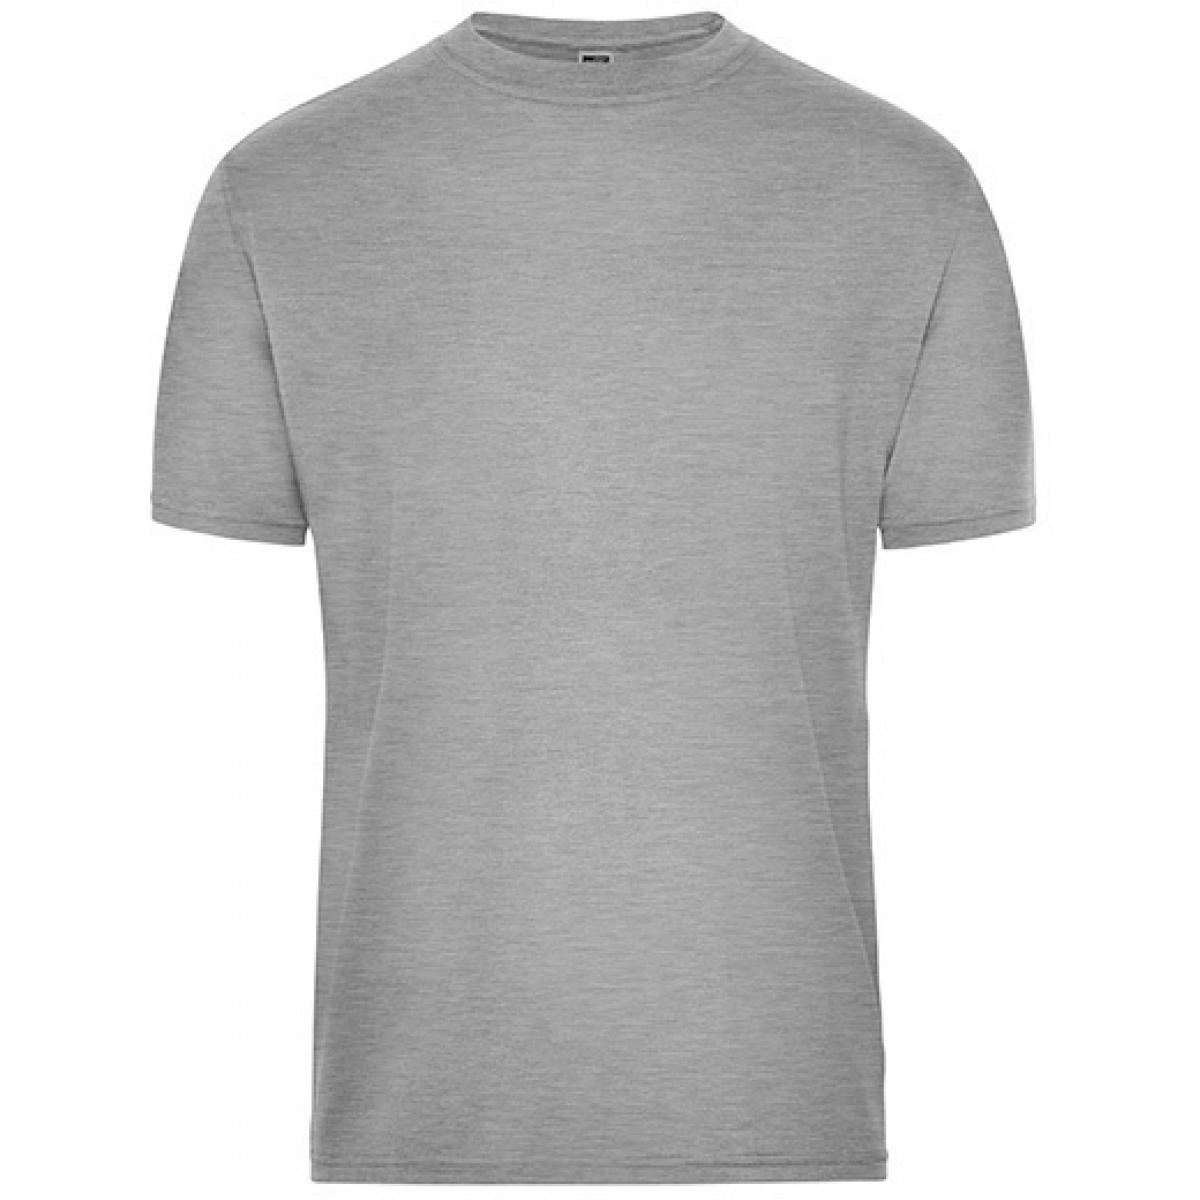 Hersteller: James+Nicholson Herstellernummer: JN1808 Artikelbezeichnung: Men‘s BIO Workwear T-Shirt, Waschbar bis 60 °C Farbe: Grey Heather